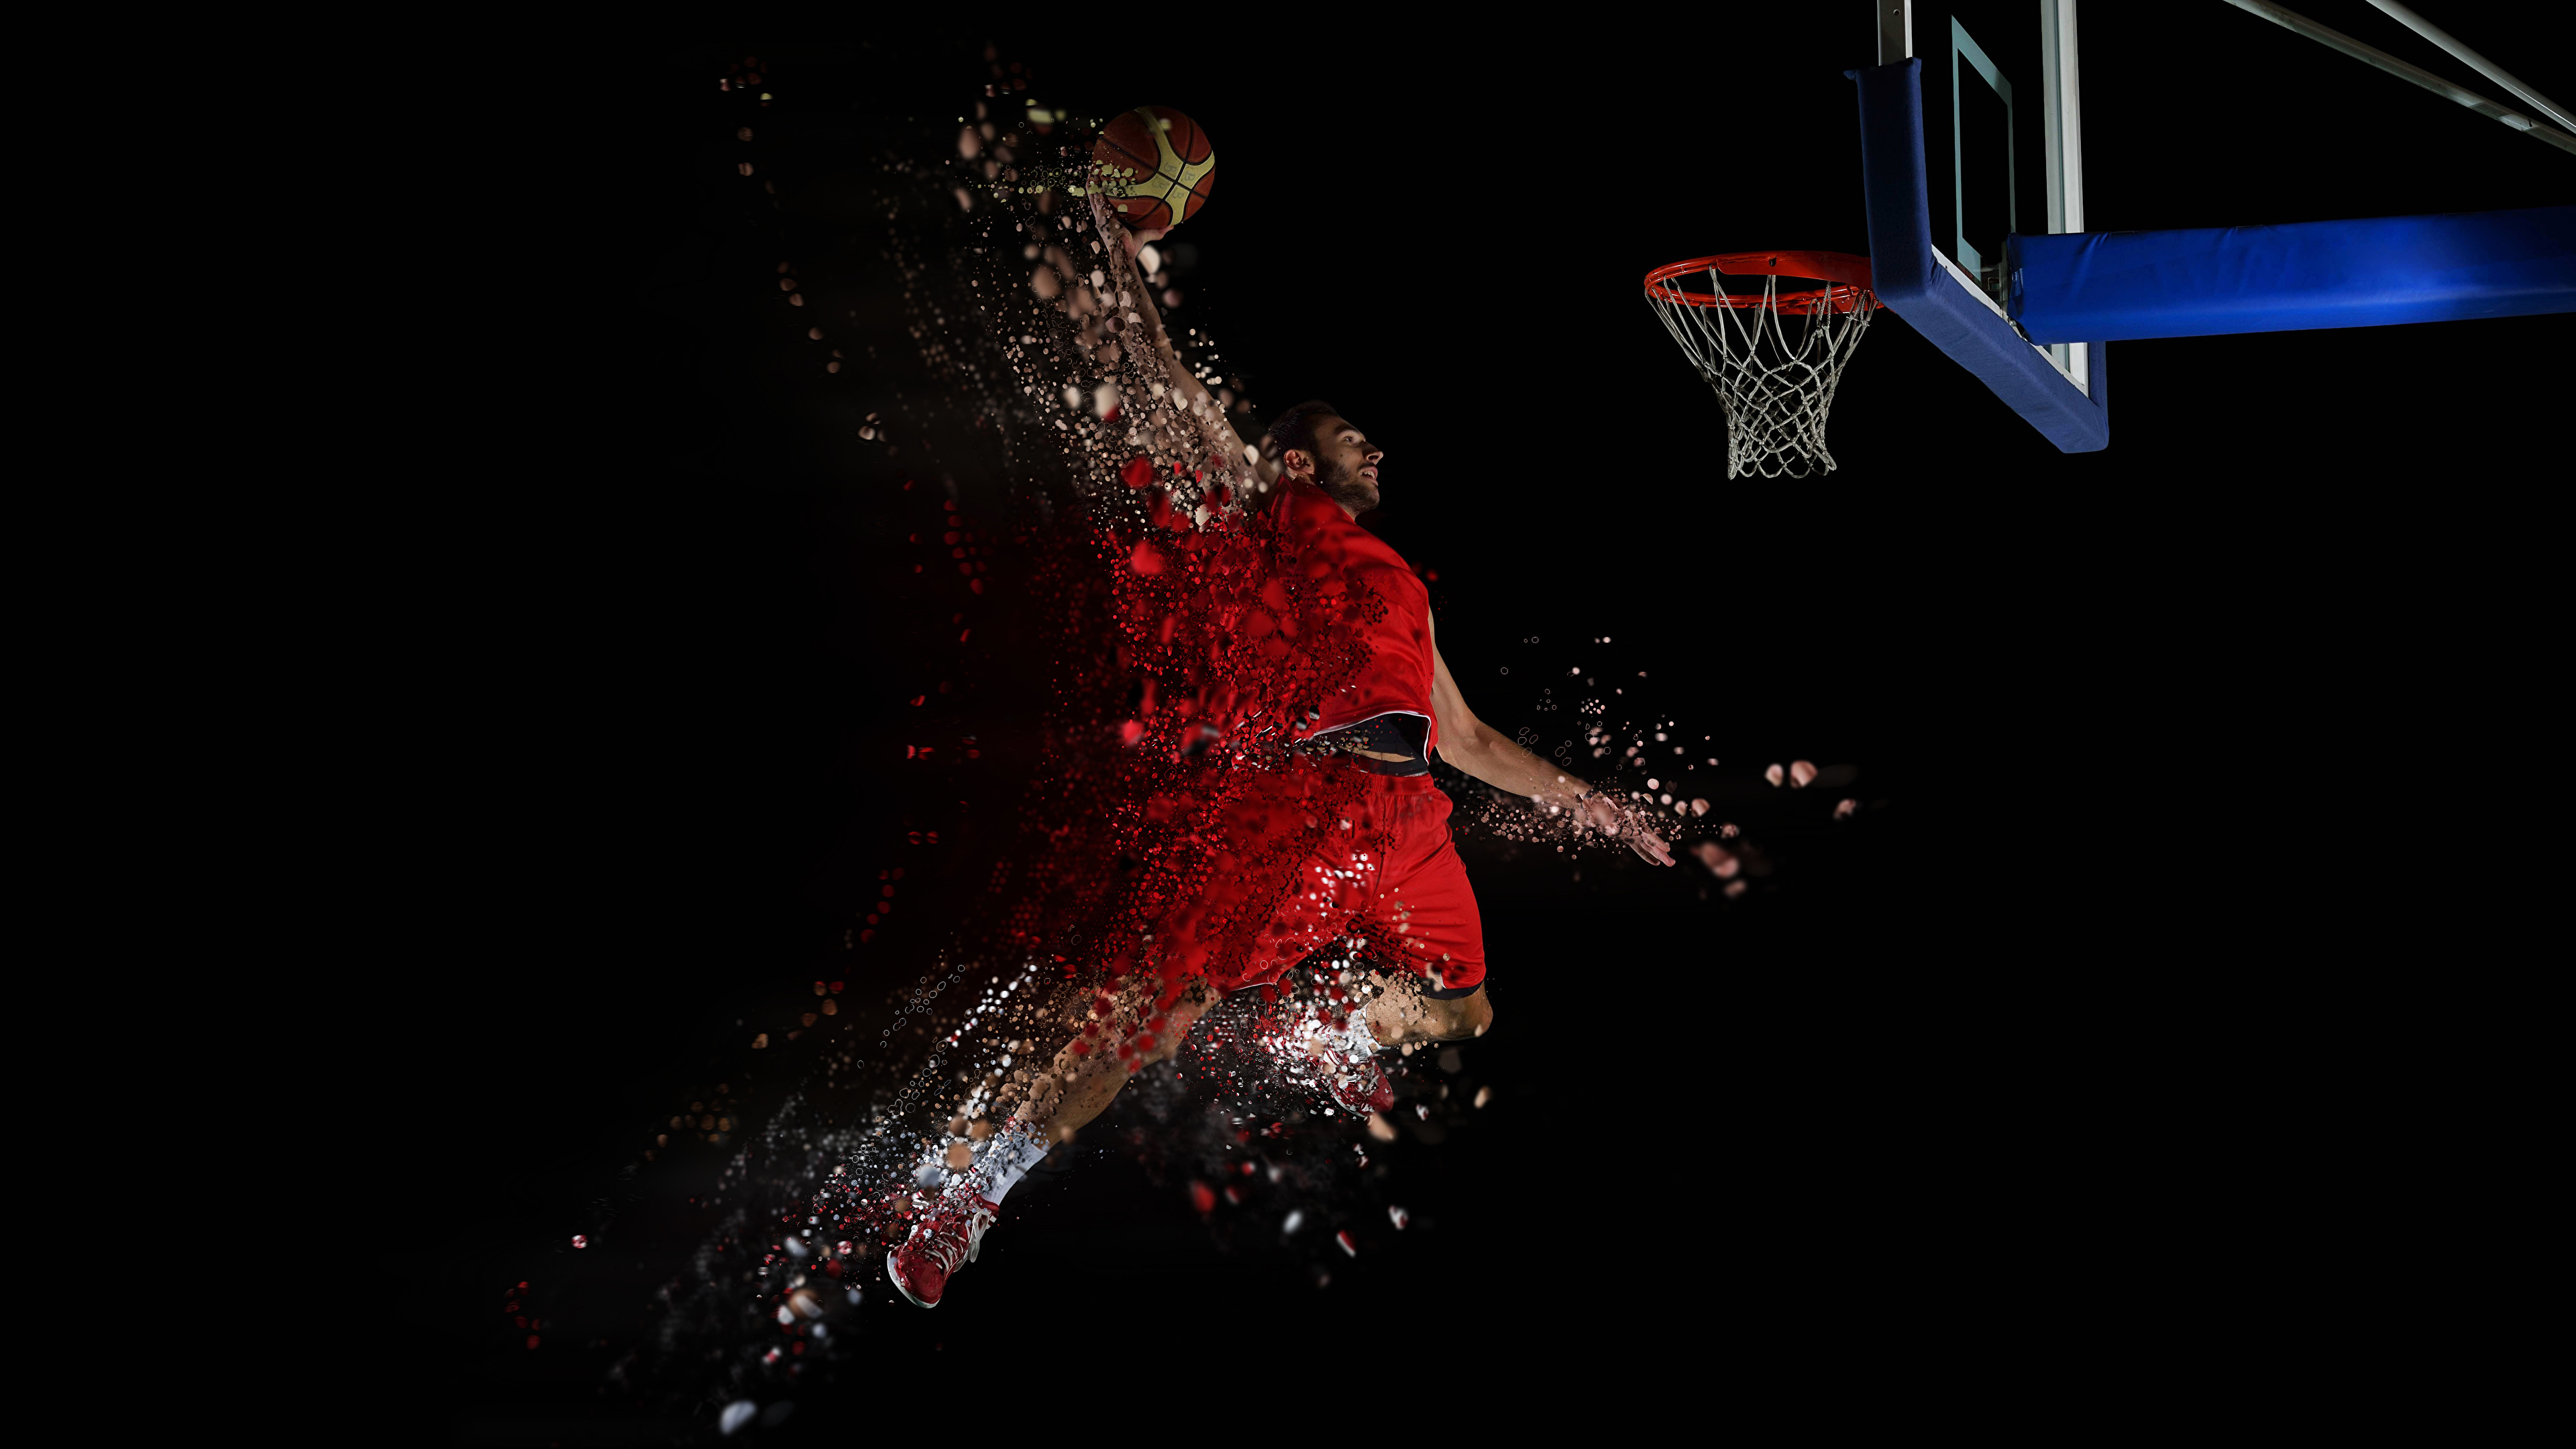 壁紙 3840x2160 バスケットボール 男性 黒色背景 飛び スポーツボール スポーツ ダウンロード 写真